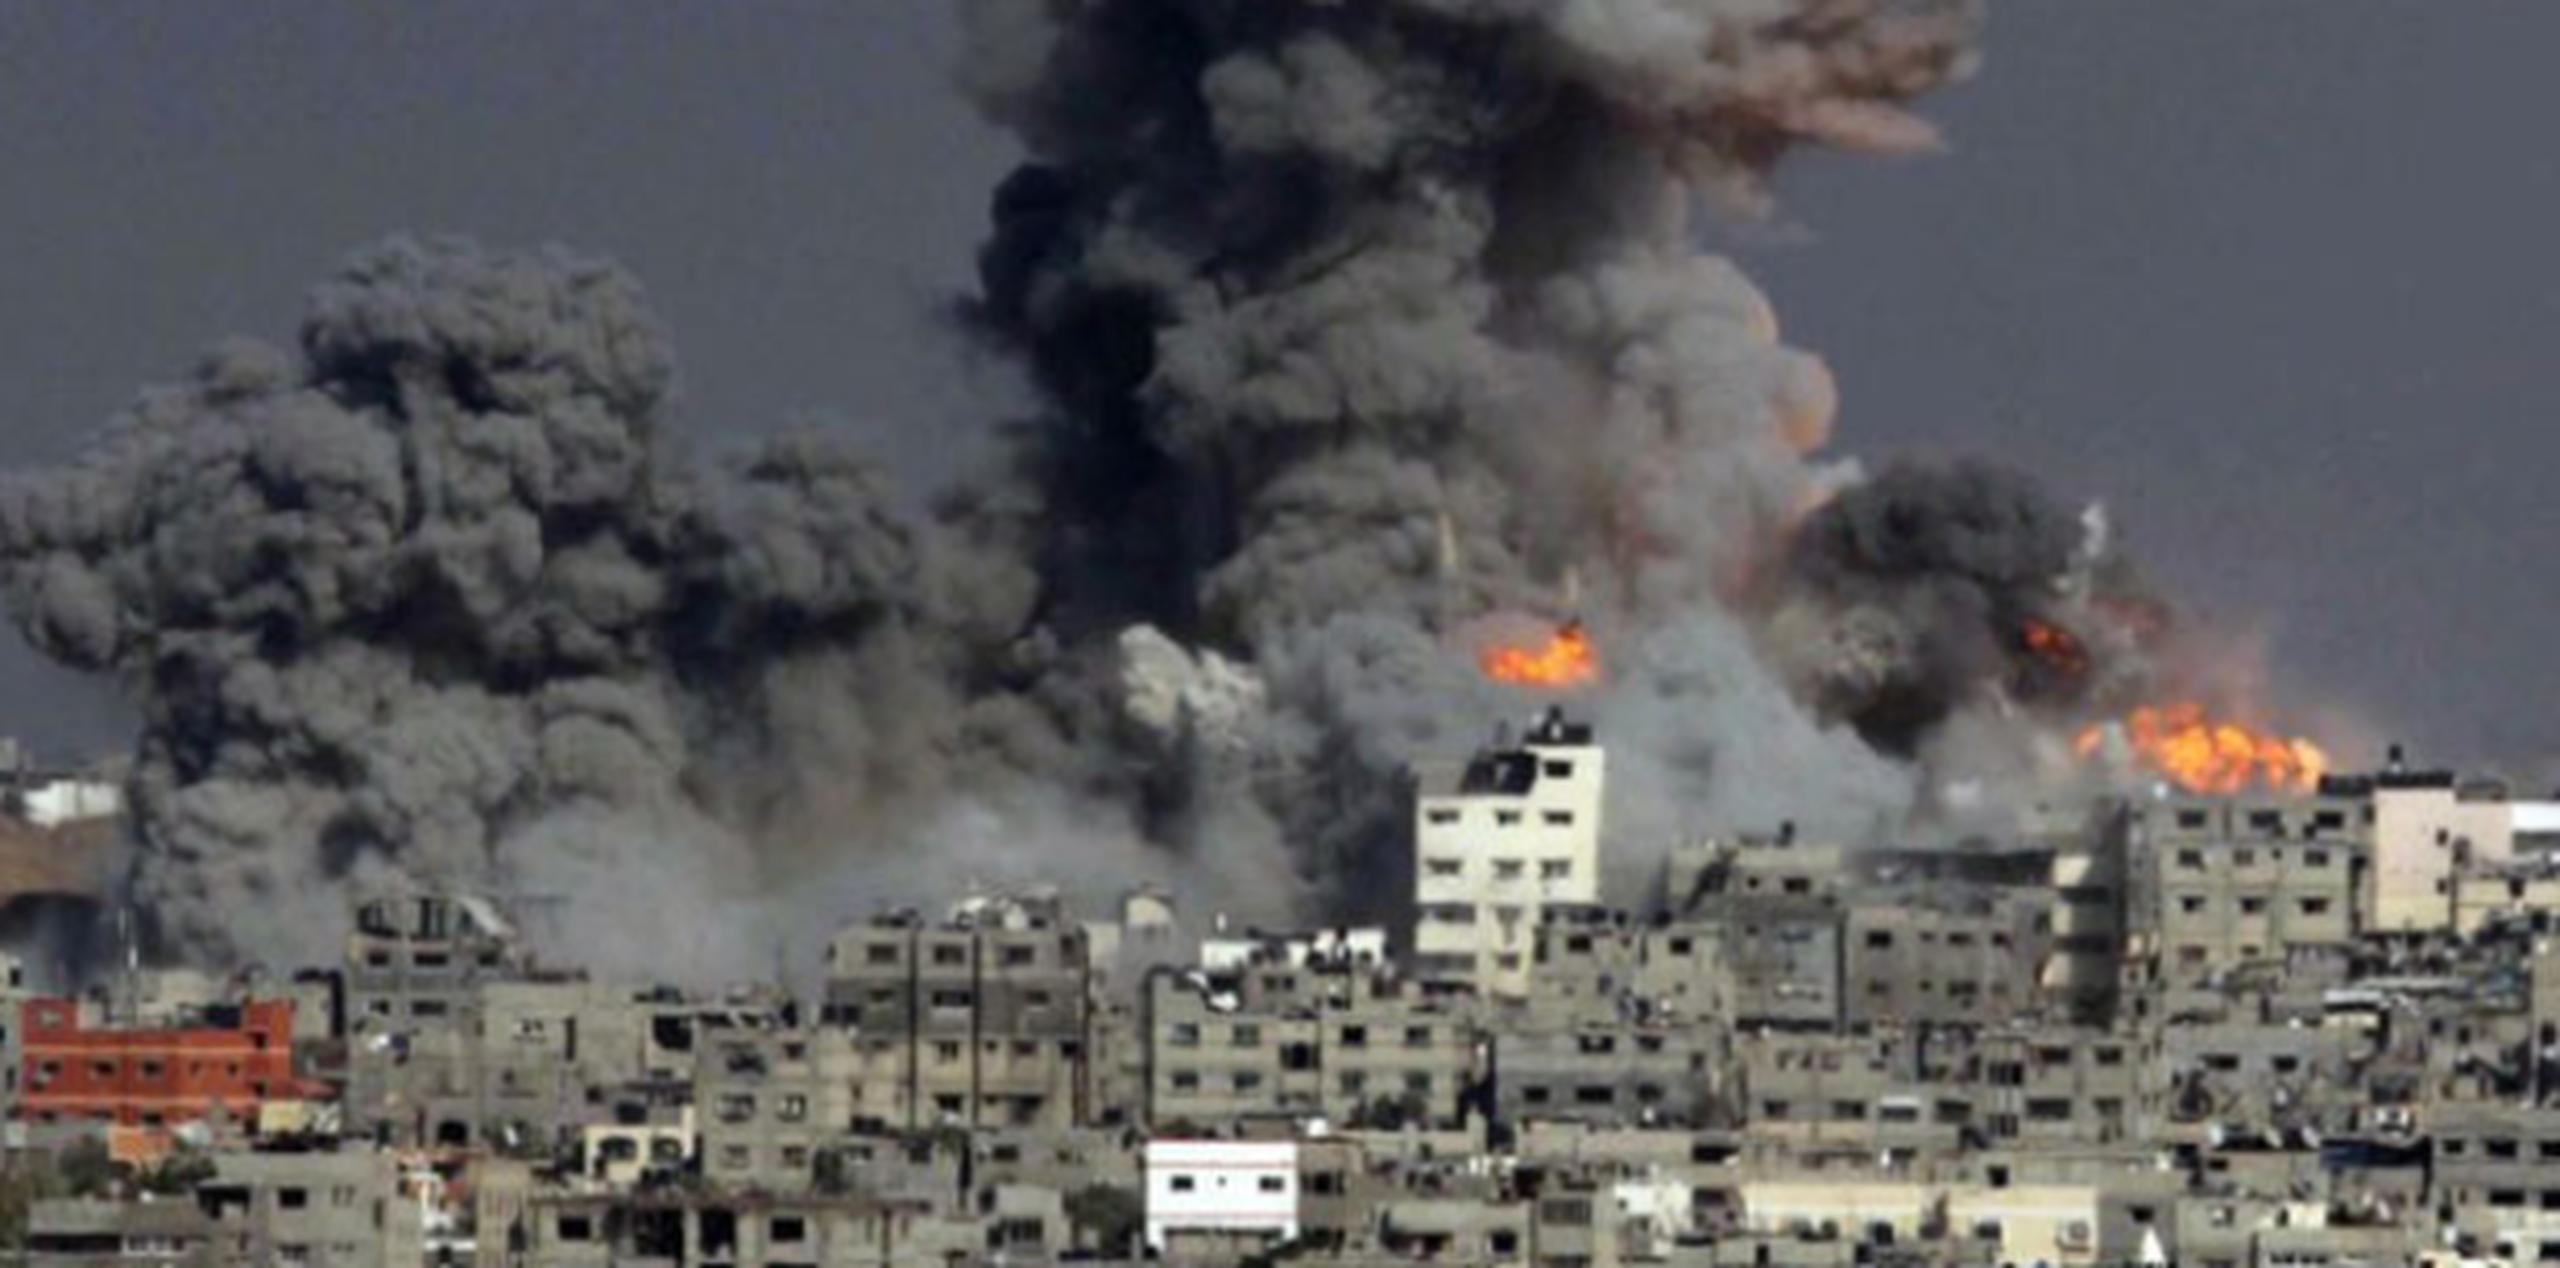 Durante la pasada noche y al despuntar el alba, la marina de guerra, la aviación y la infantería israelíes recrudecieron los ataques en todo el territorio de la Franja, incluido el centro de la ciudad de Gaza. (AFP)